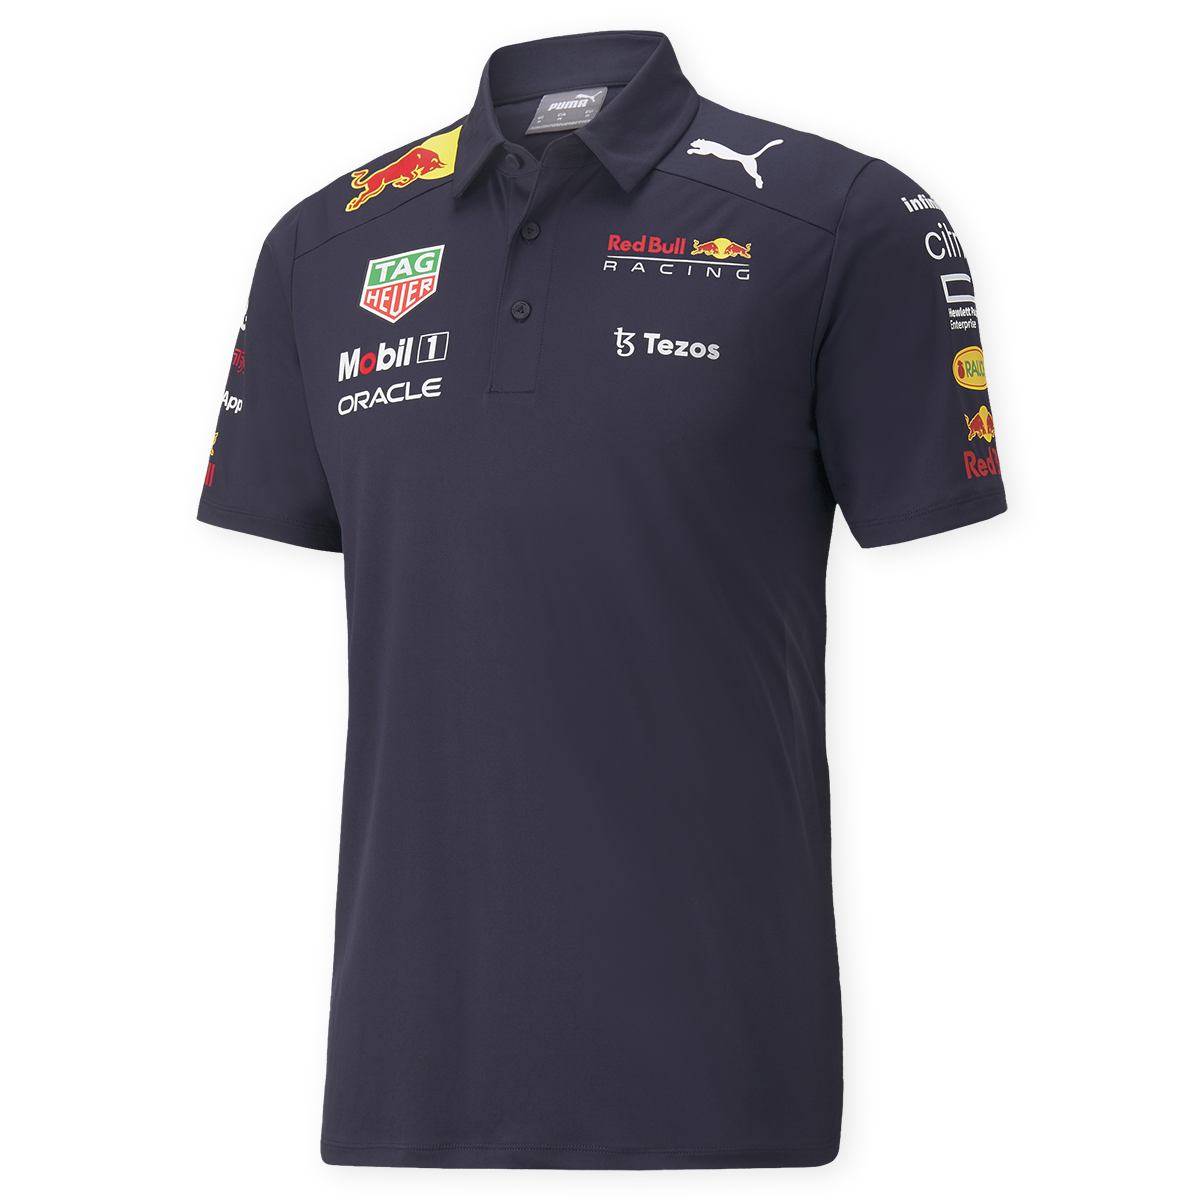 vrijdag ik zal sterk zijn Preventie Red Bull Racing Team Polo 2022 - Heren › Polo shirts › Verstappen.com